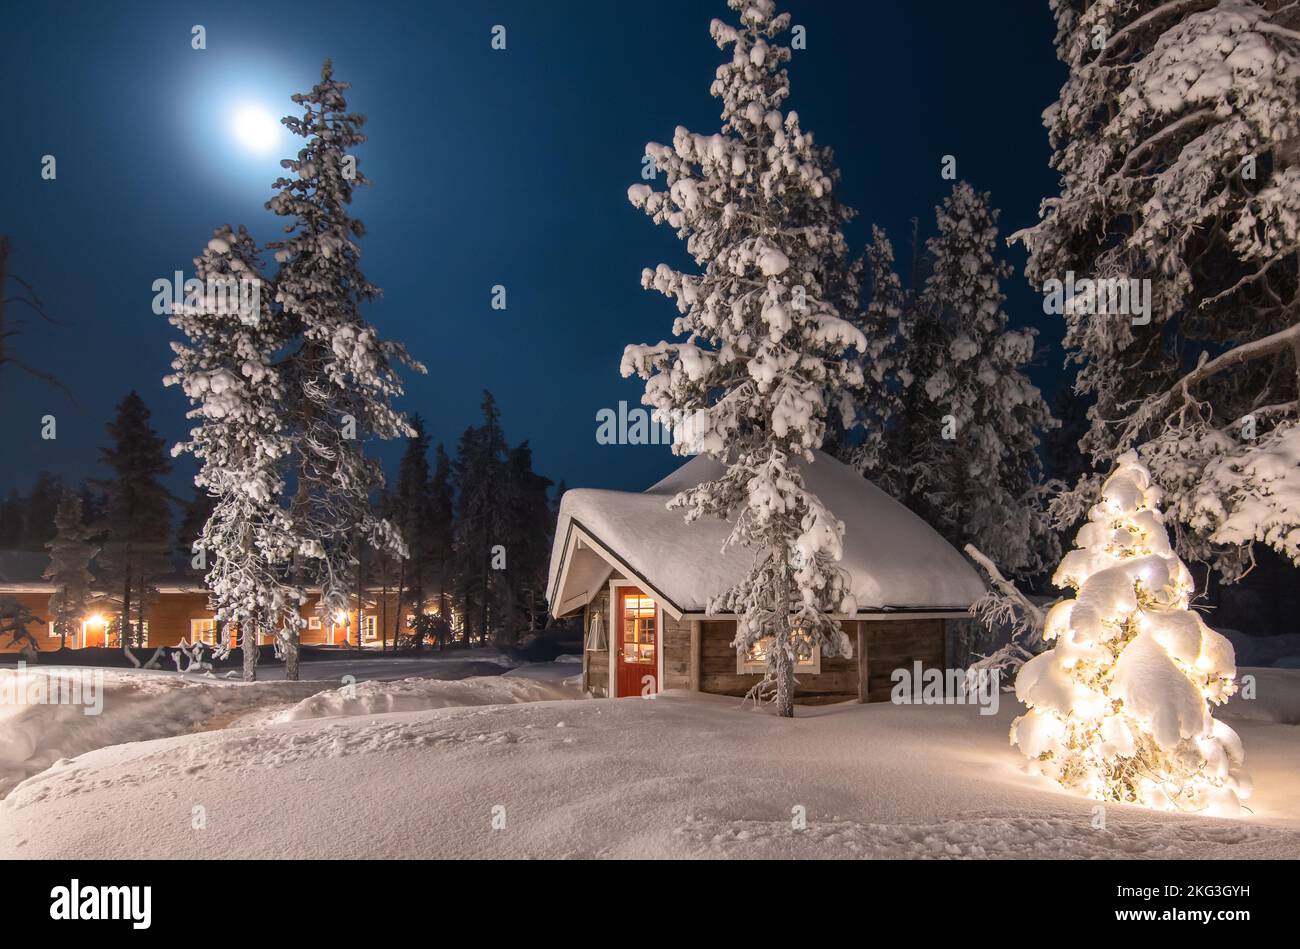 Ambiente invernale e natalizio all'aperto con cabina in legno nel bosco. Paesaggio forestale invernale a luna piena, Finlandia, Lapponia. Foto Stock